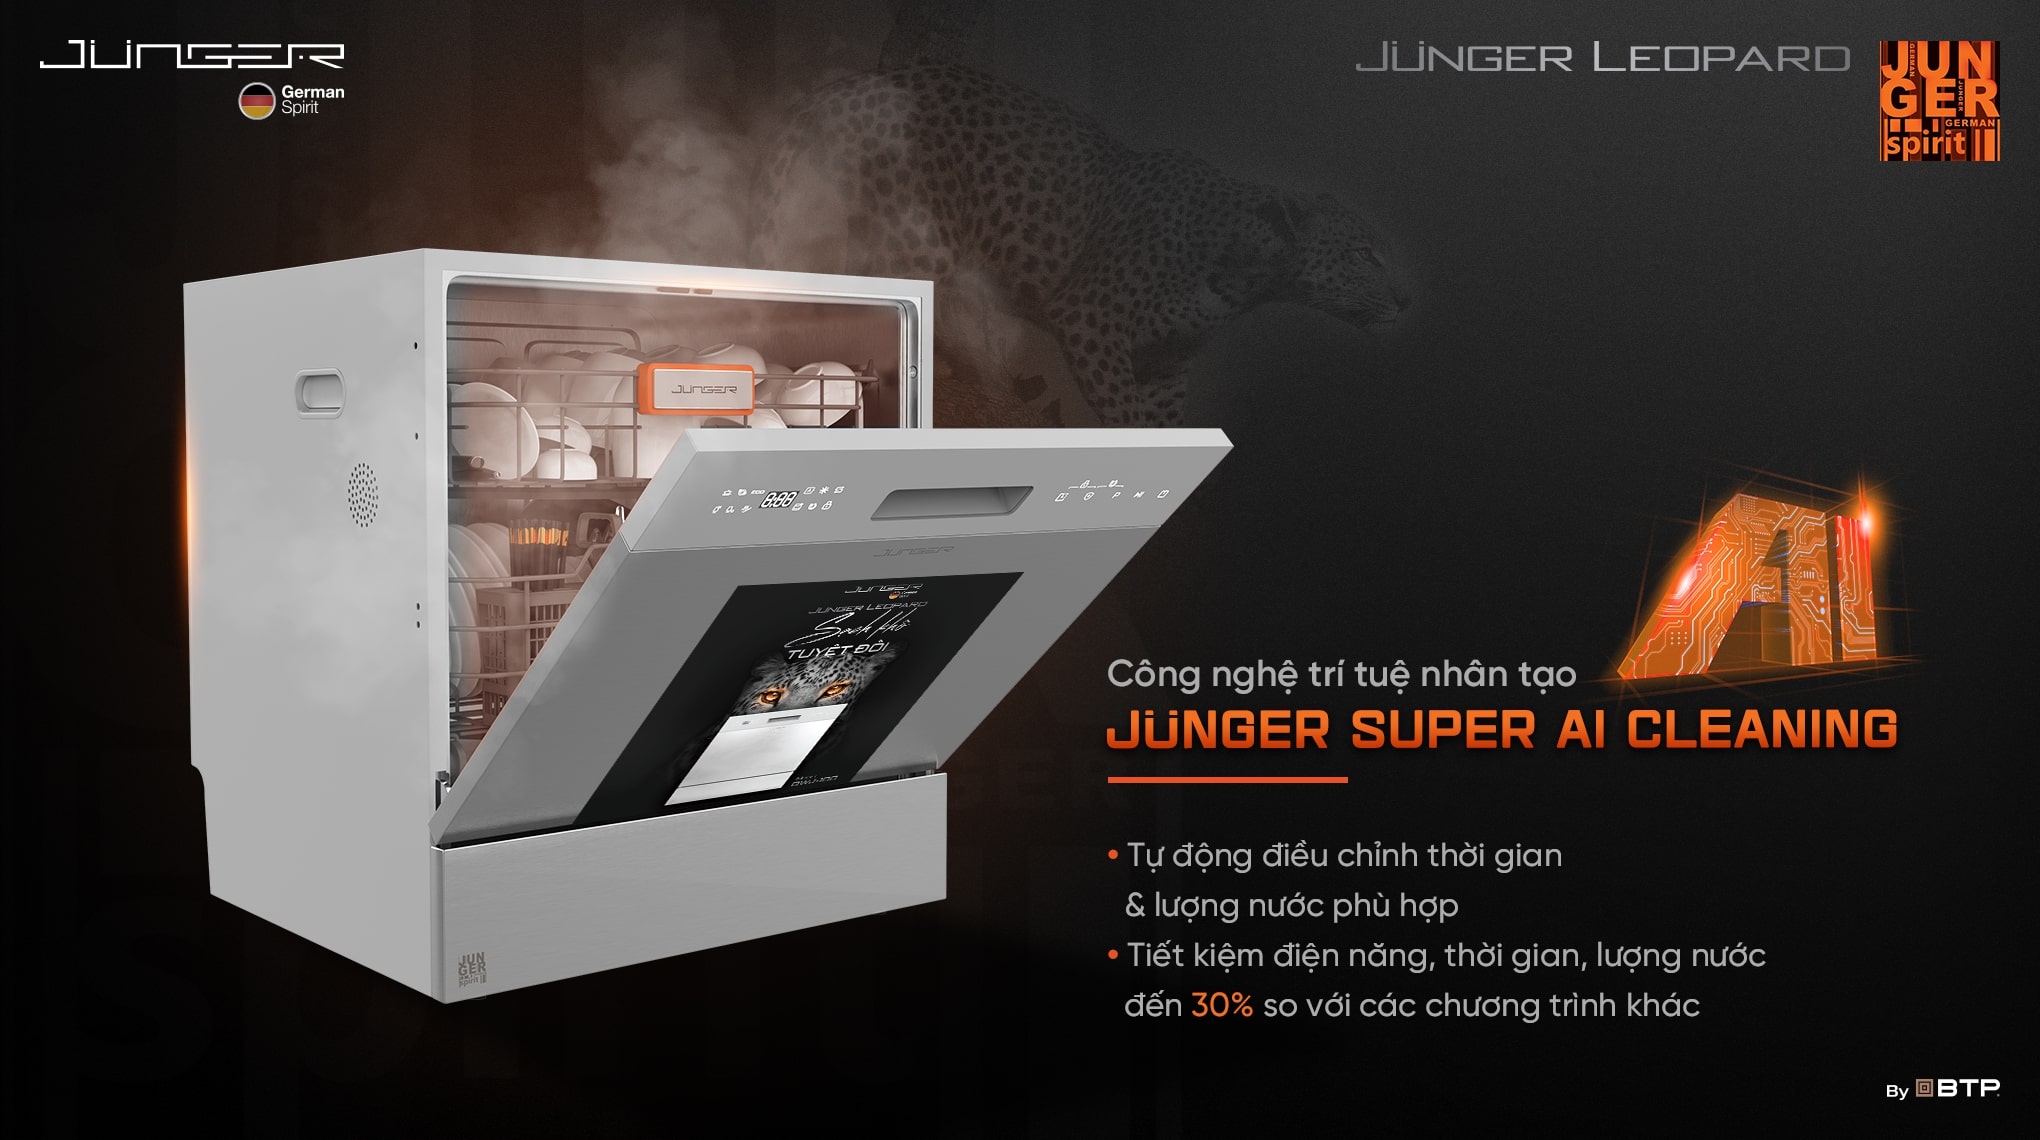 Công nghệ Junger Super AI Cleaning tự động điều chỉnh thời gian và lượng nước rửa phù hợp giúp tiết kiệm điện năng, thời gian, lượng nước tới 30%